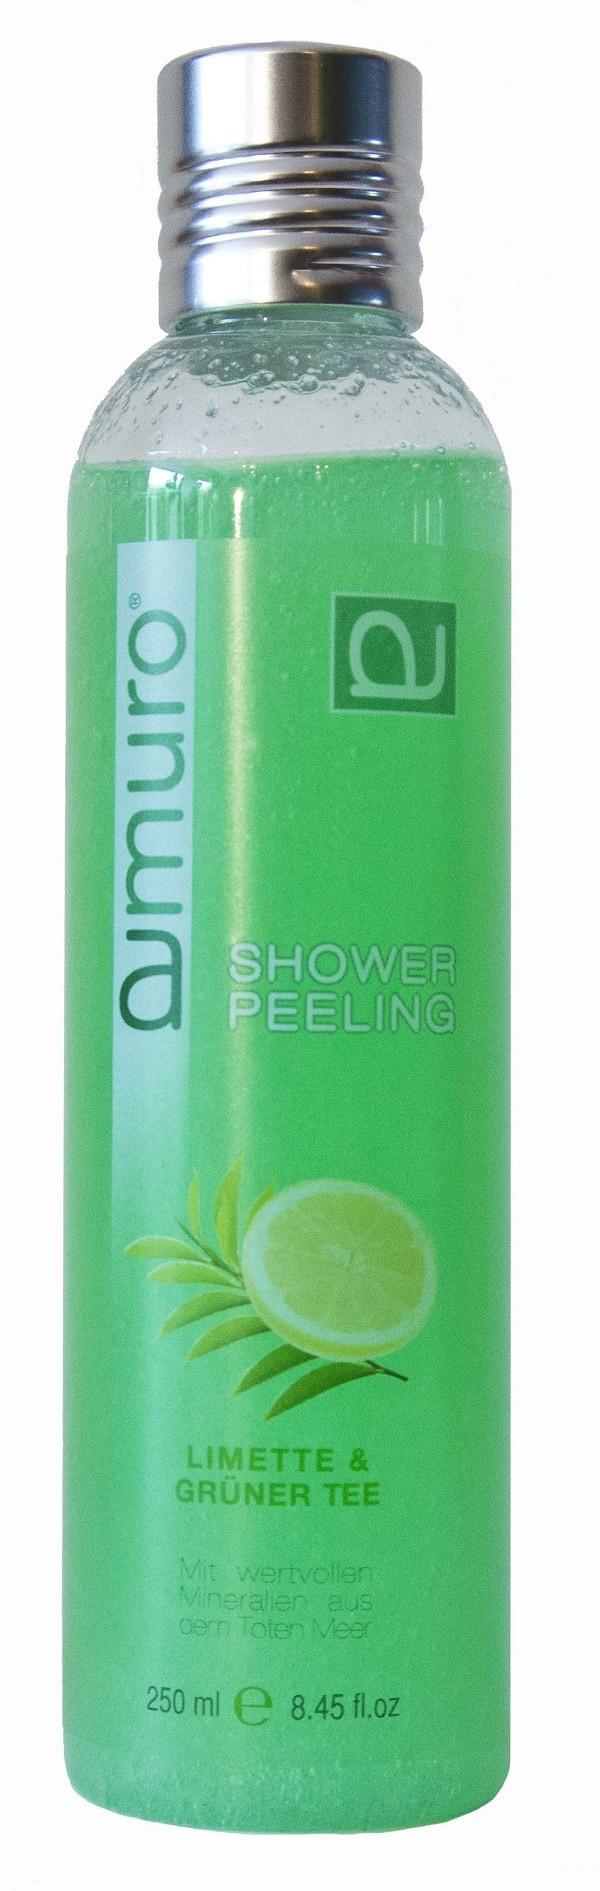 Art: 259 Limette-Grüner Tee Shower Peeling Wellness-Feeling pur 250 ml